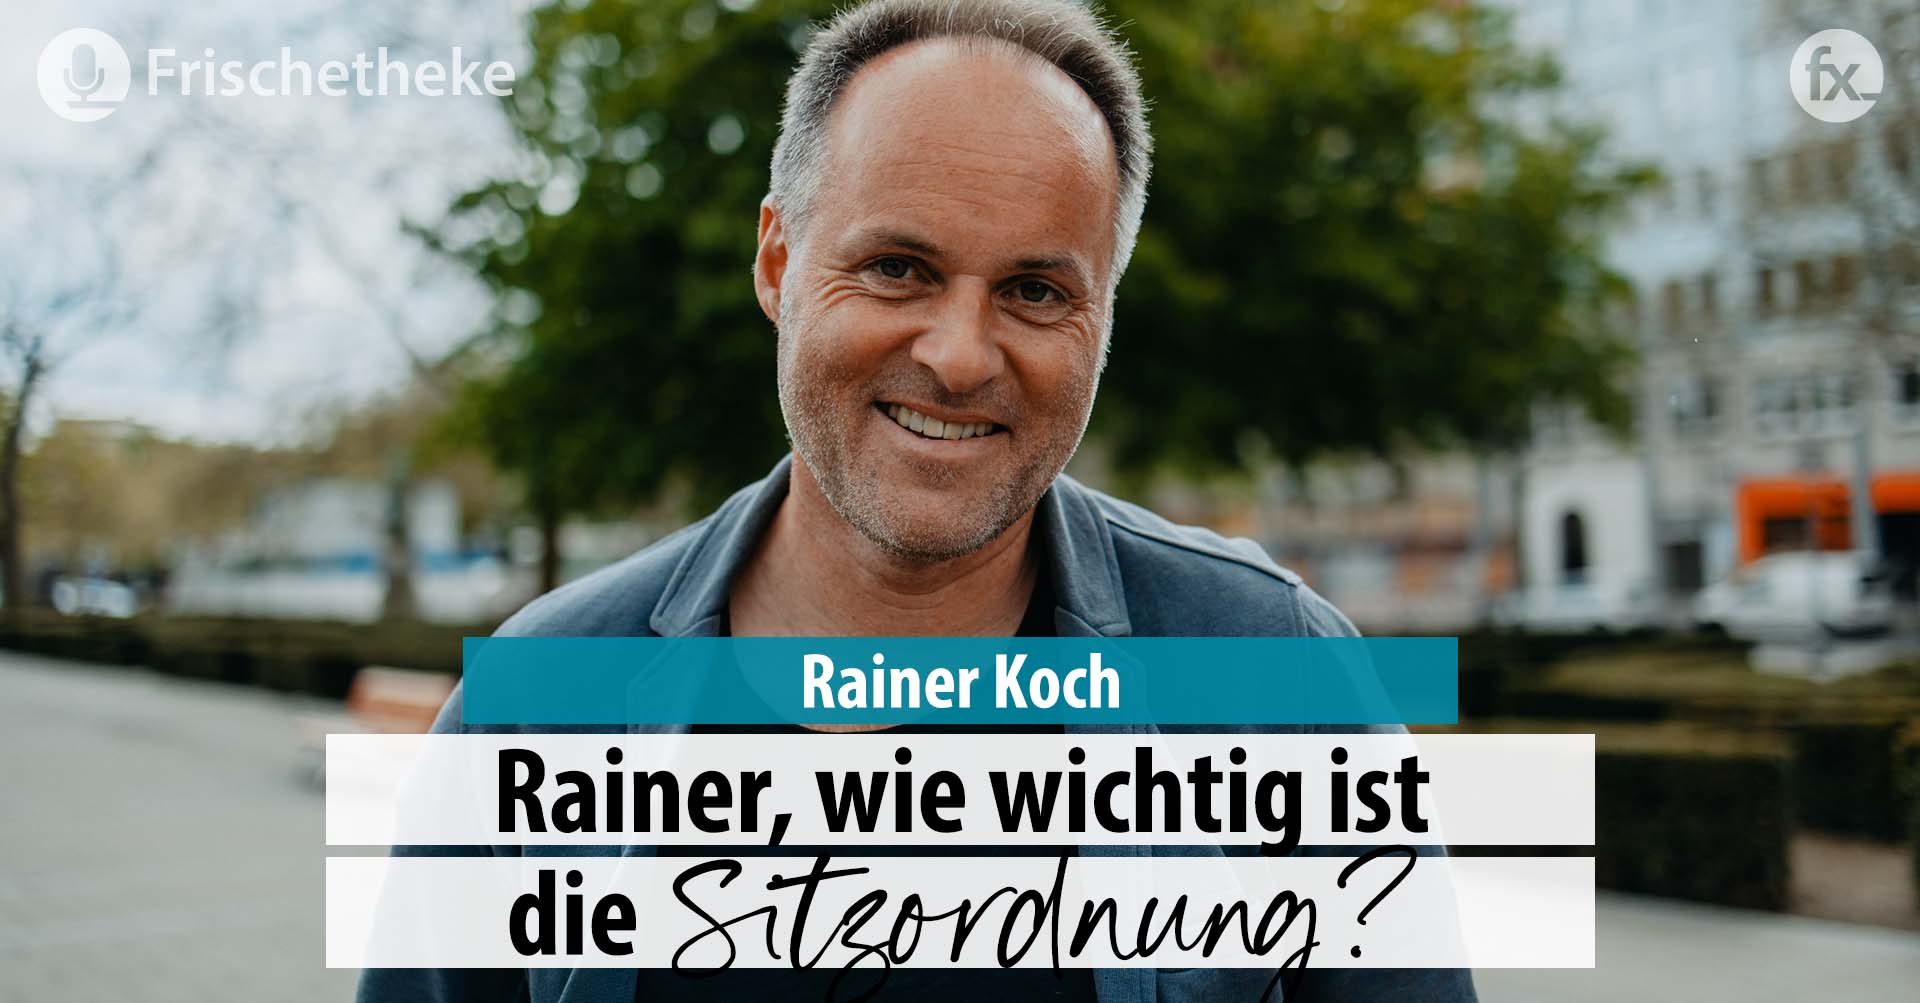 59 – Rainer, wie wichtig ist die Sitzordnung?